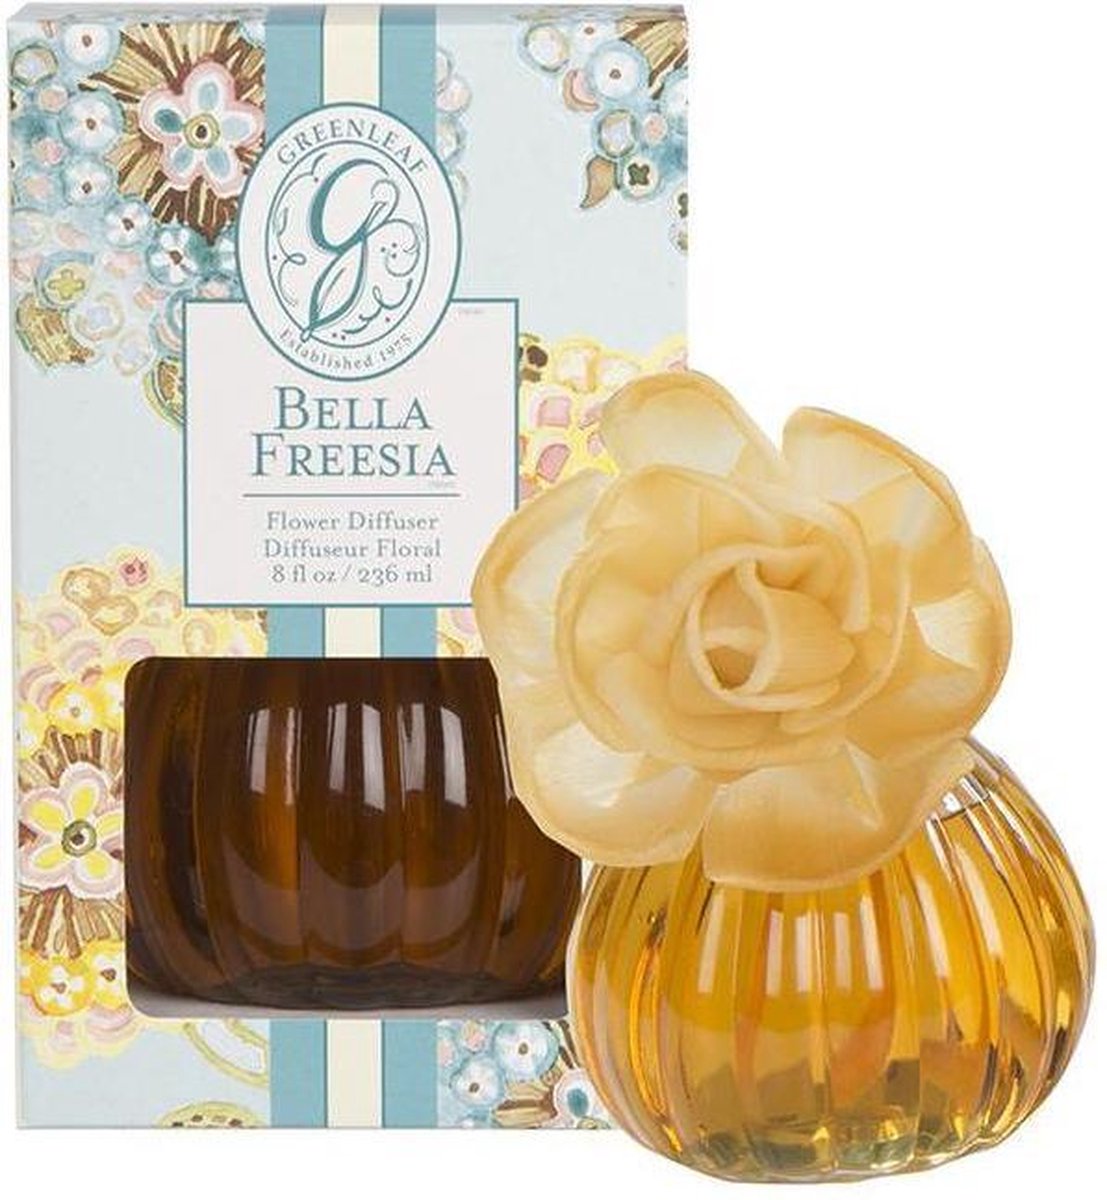 Greanleaf Flower Diffuser Bella Freesia - lichte, frisse geur van Freesia en witte thee